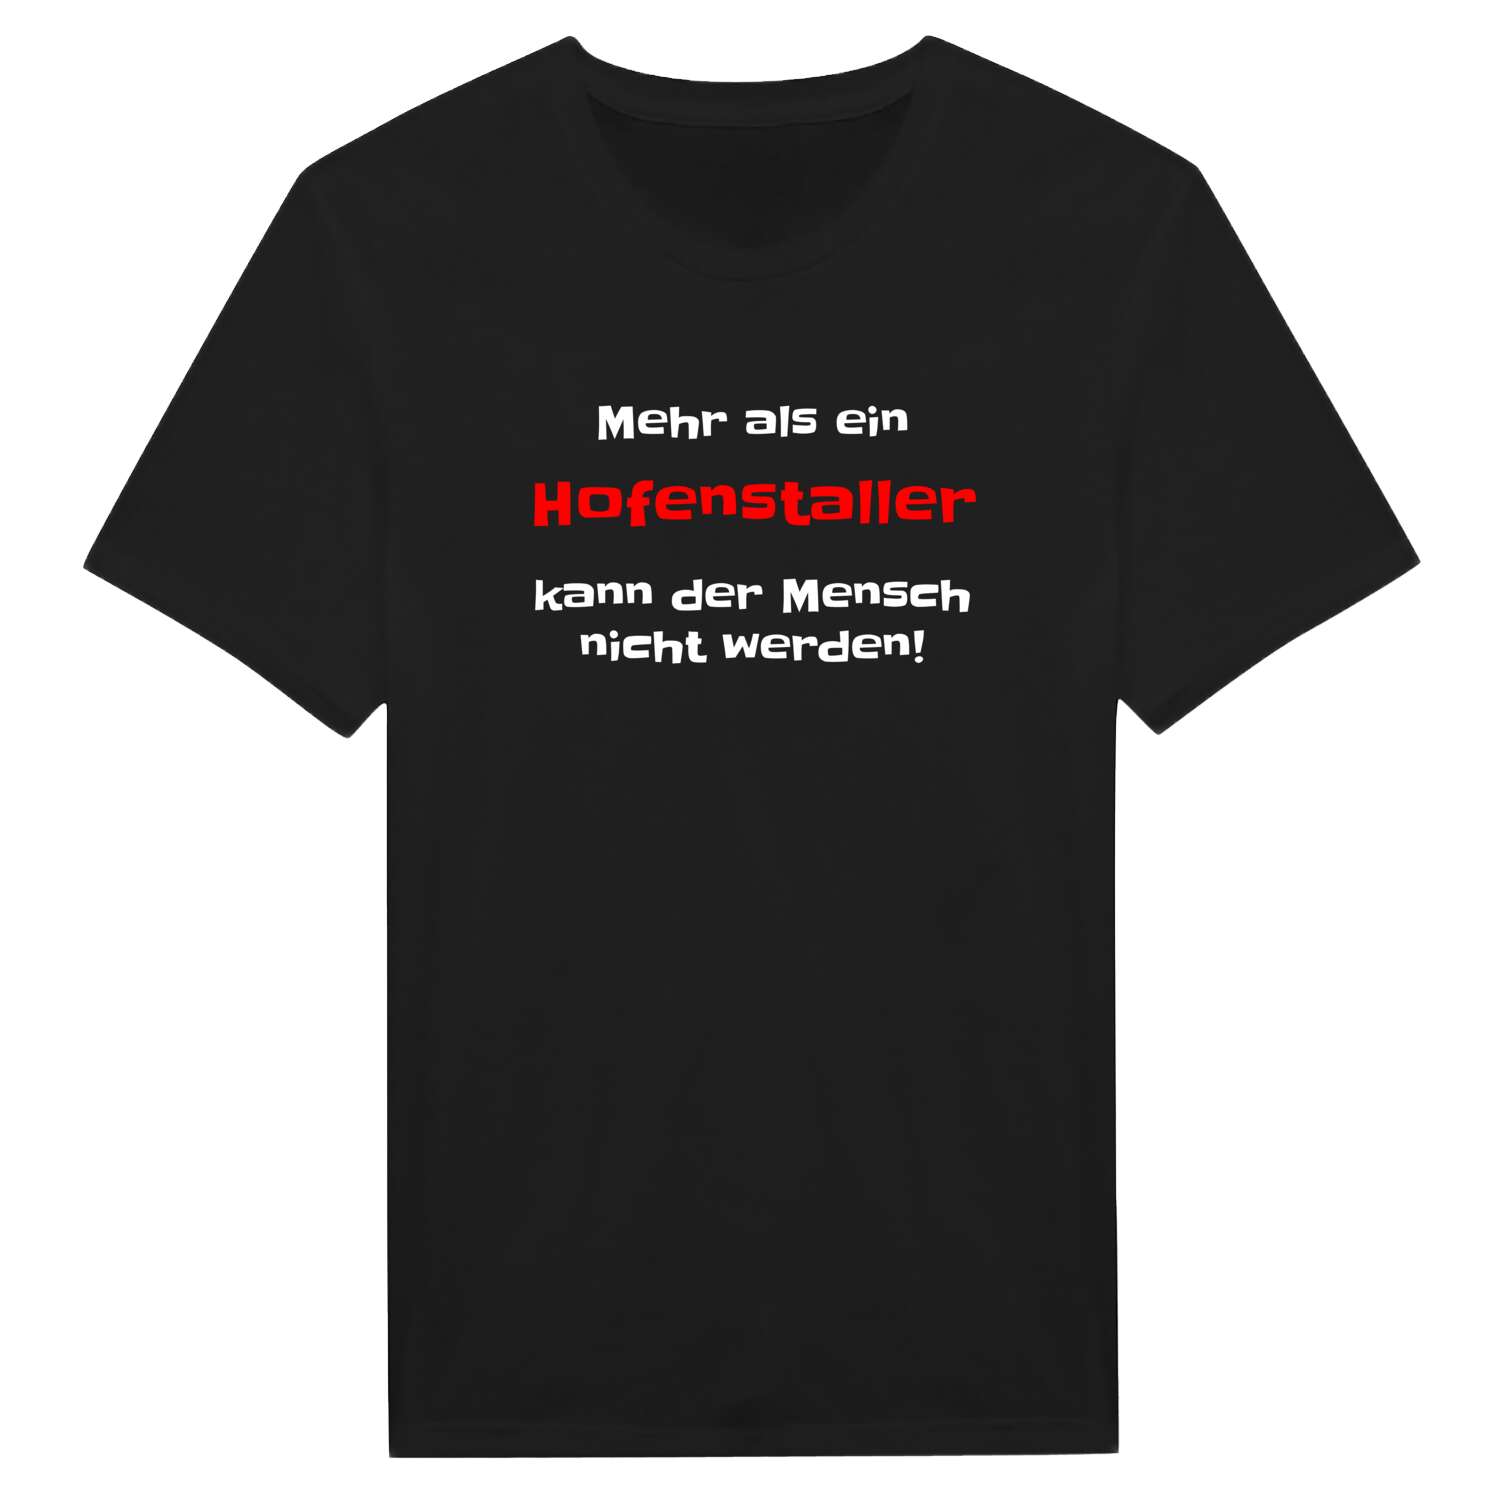 Hofenstall T-Shirt »Mehr als ein«